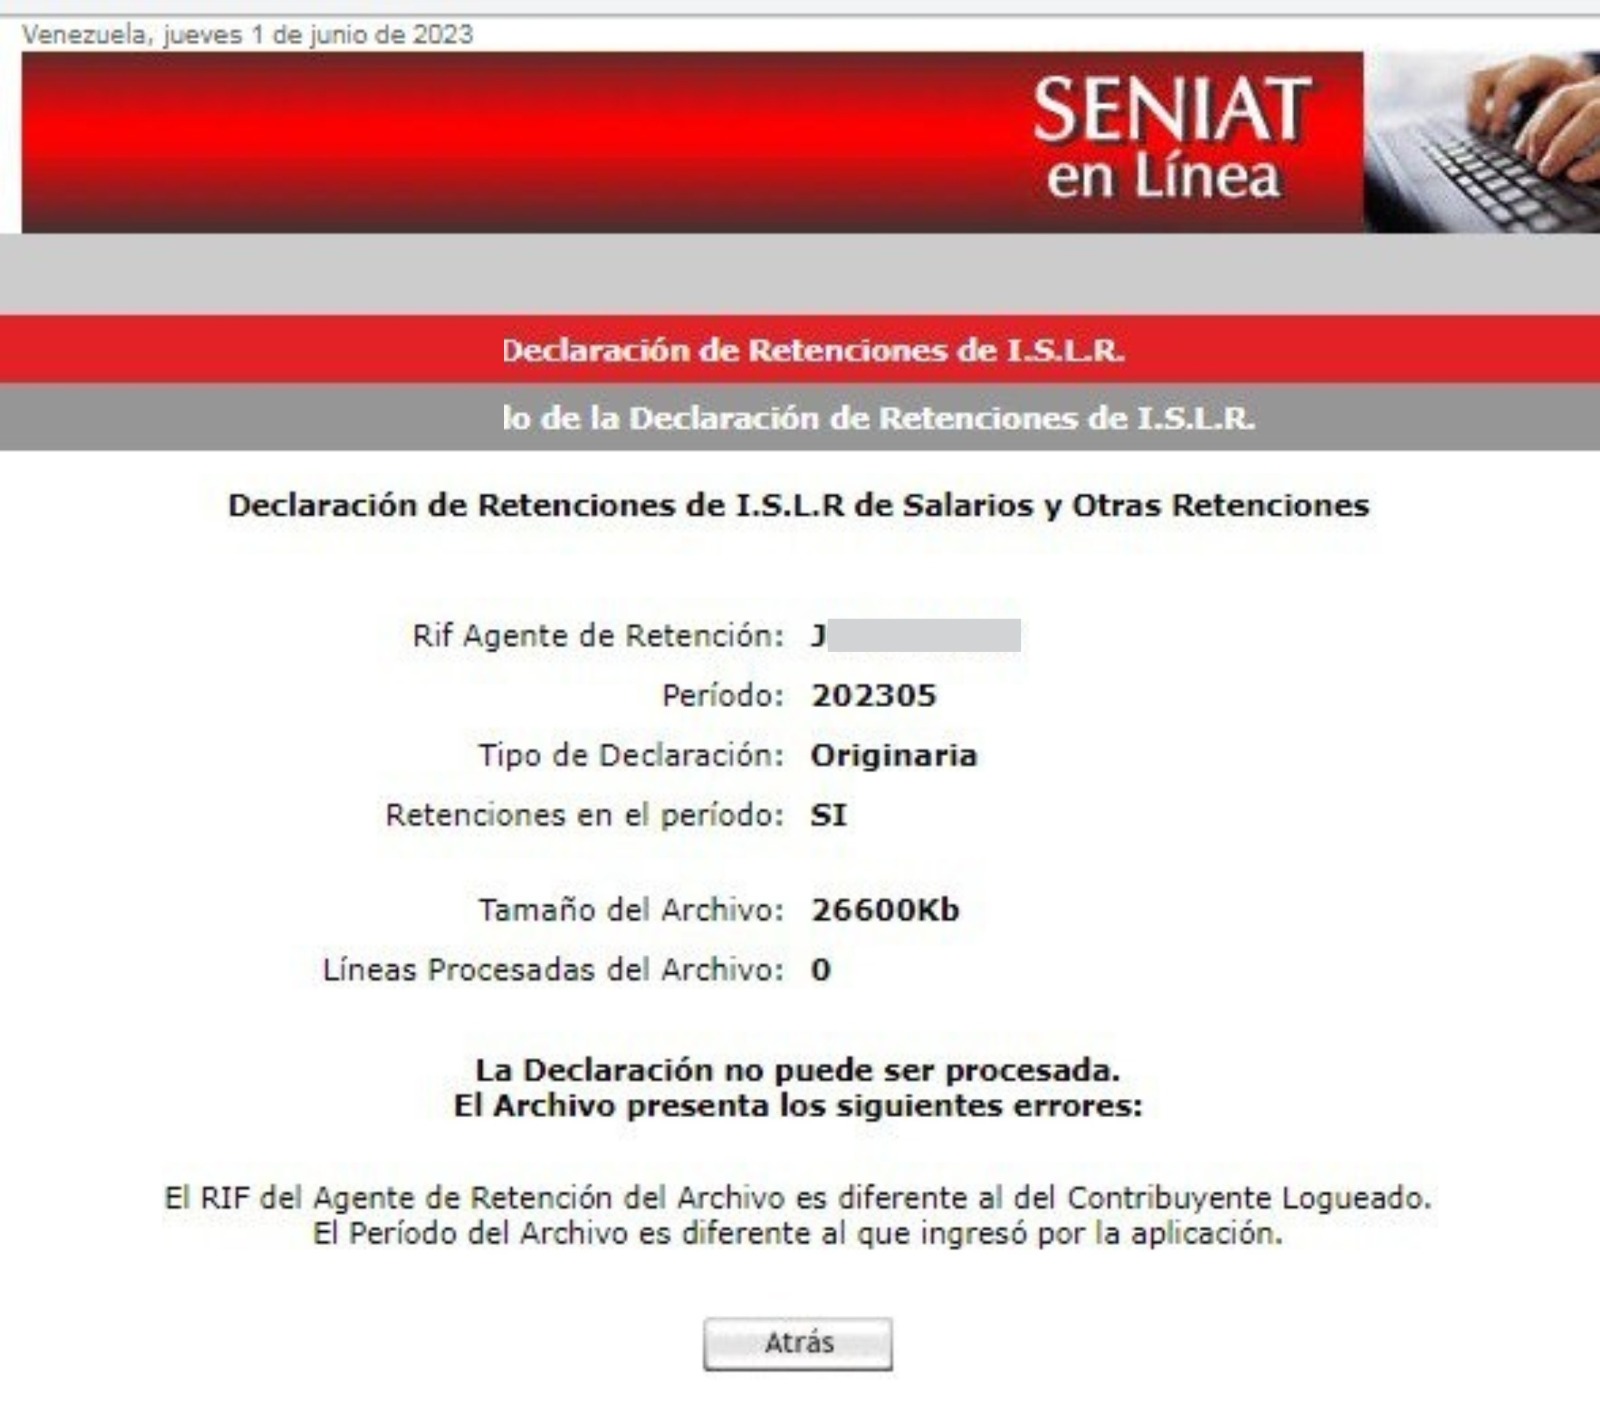 Error al procesar retenciones de islr en el portal del SENIAT - Venezuela. Junio 2023